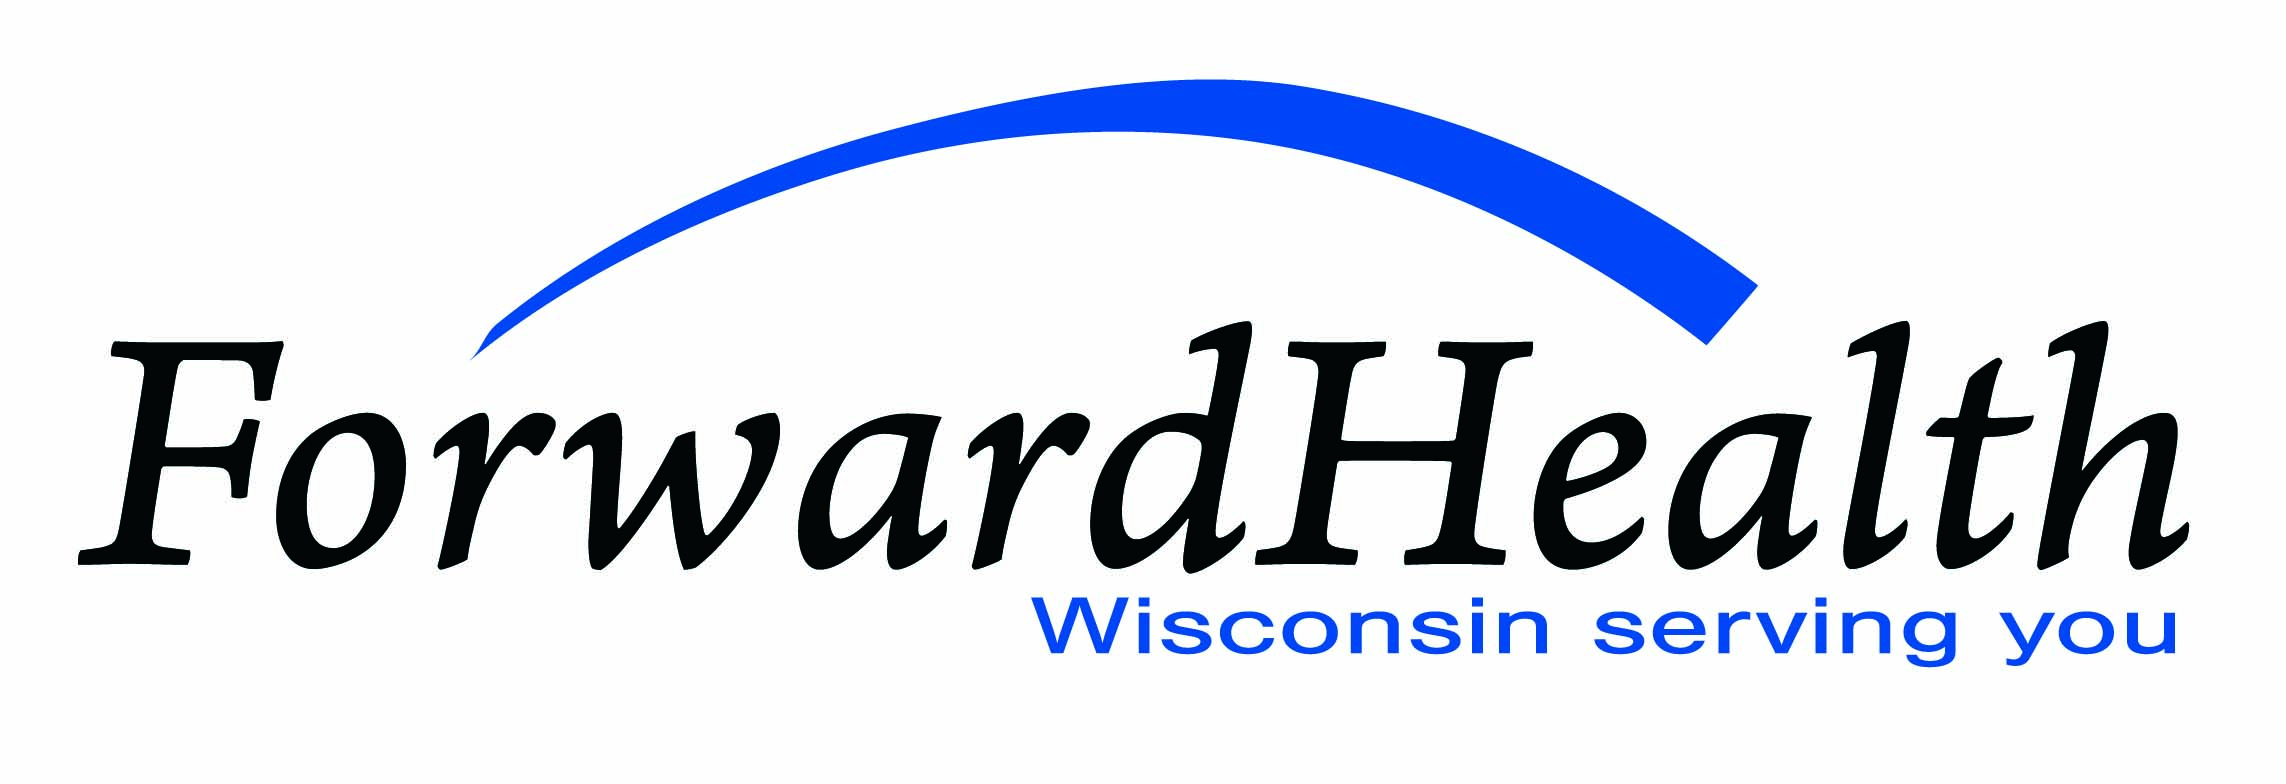 forward-health-logo